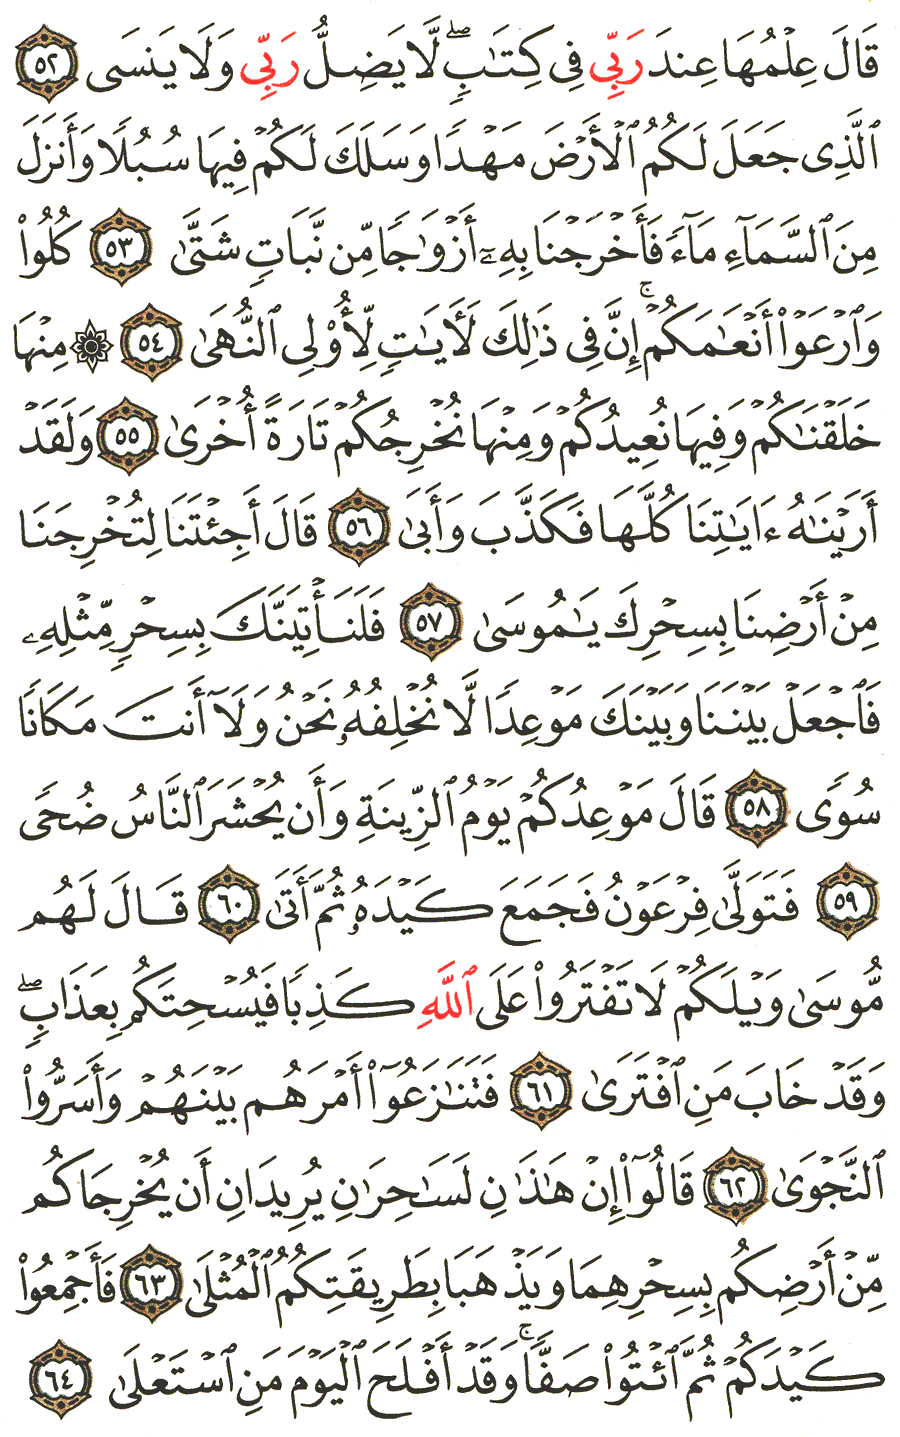 الصفحة رقم 315  من القرآن الكريم مكتوبة من المصحف